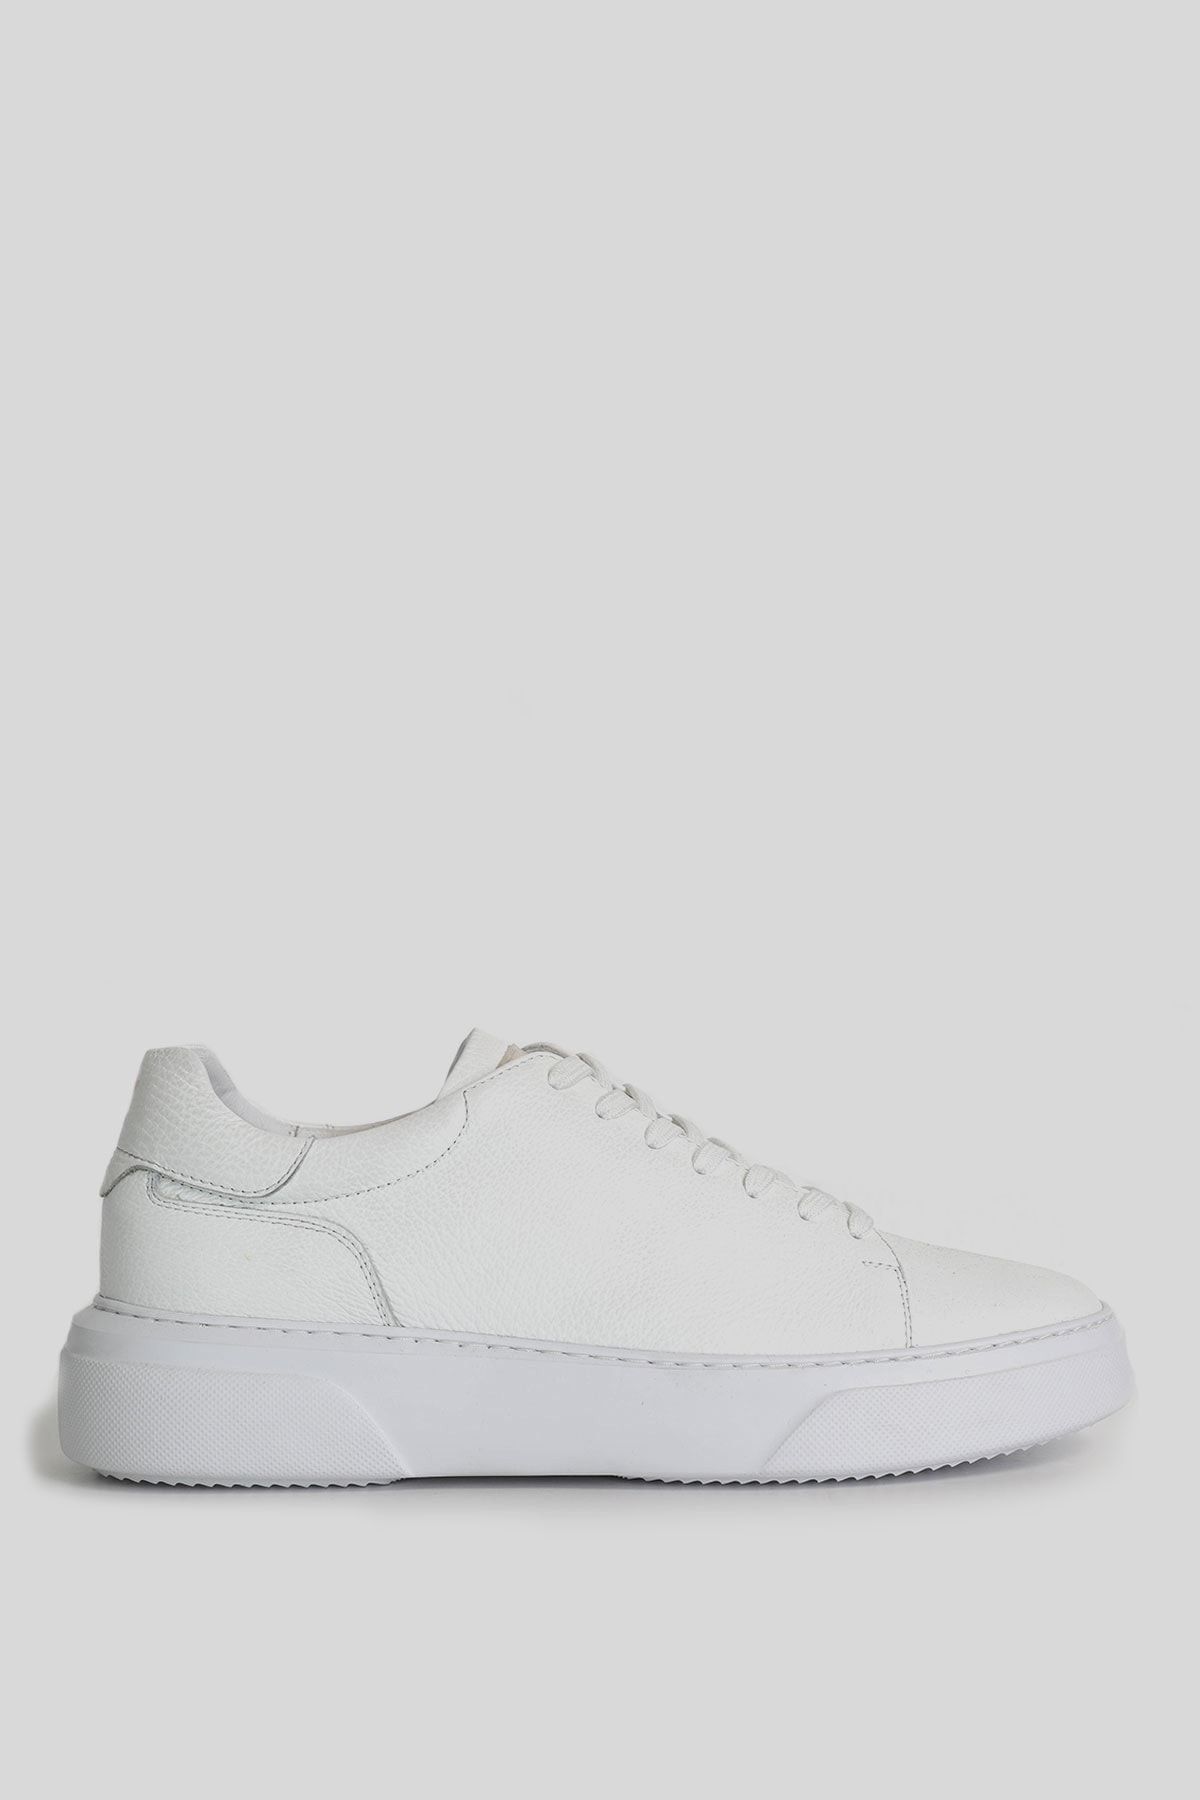 Lufian Tommy Erkek Deri Sneaker Ayakkabı Beyaz